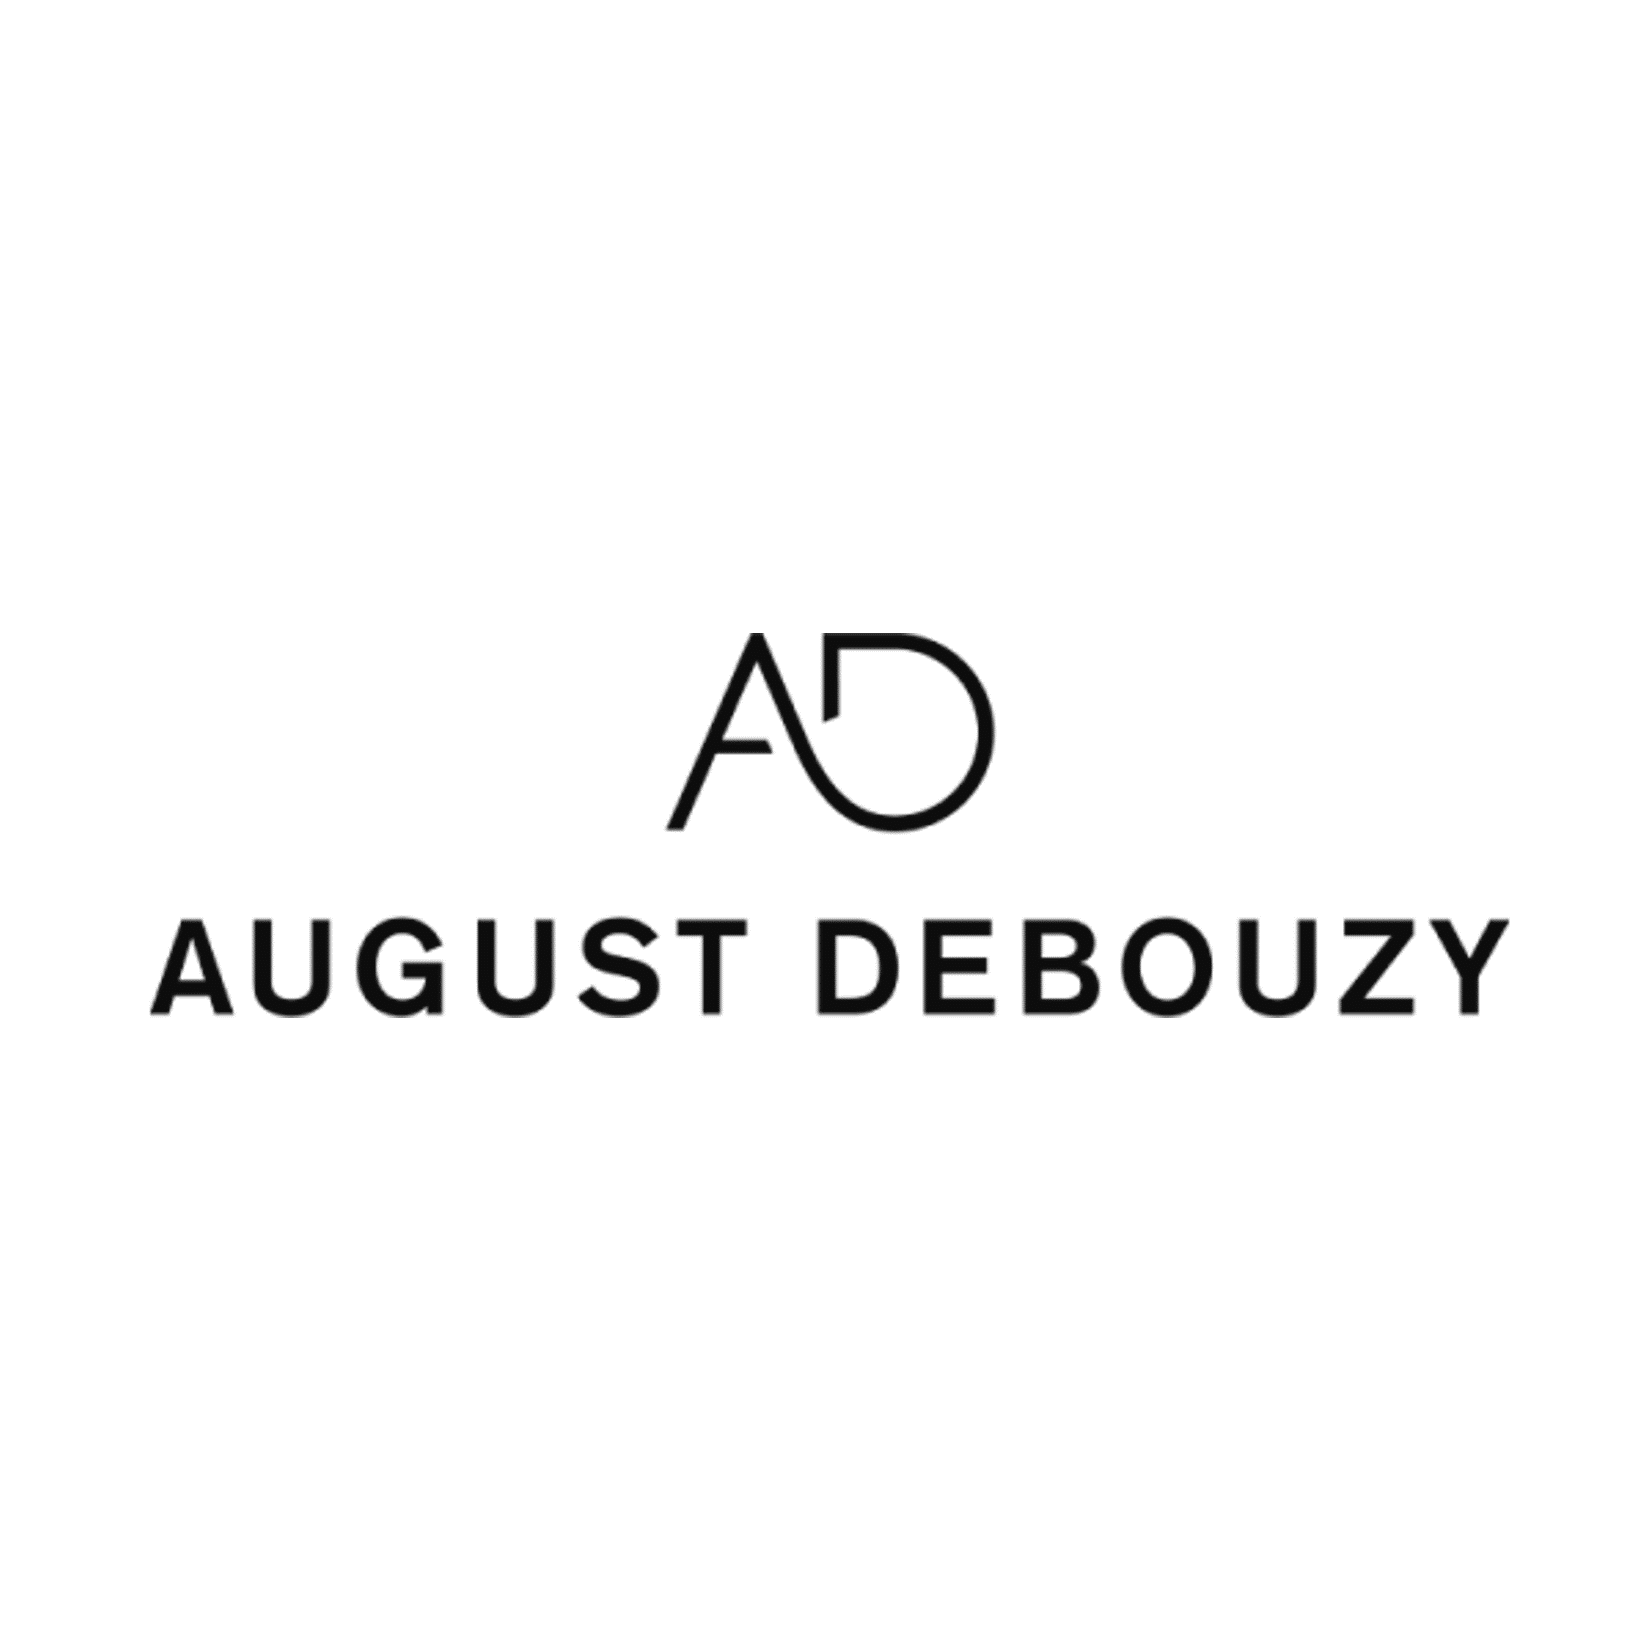 August Debouzy